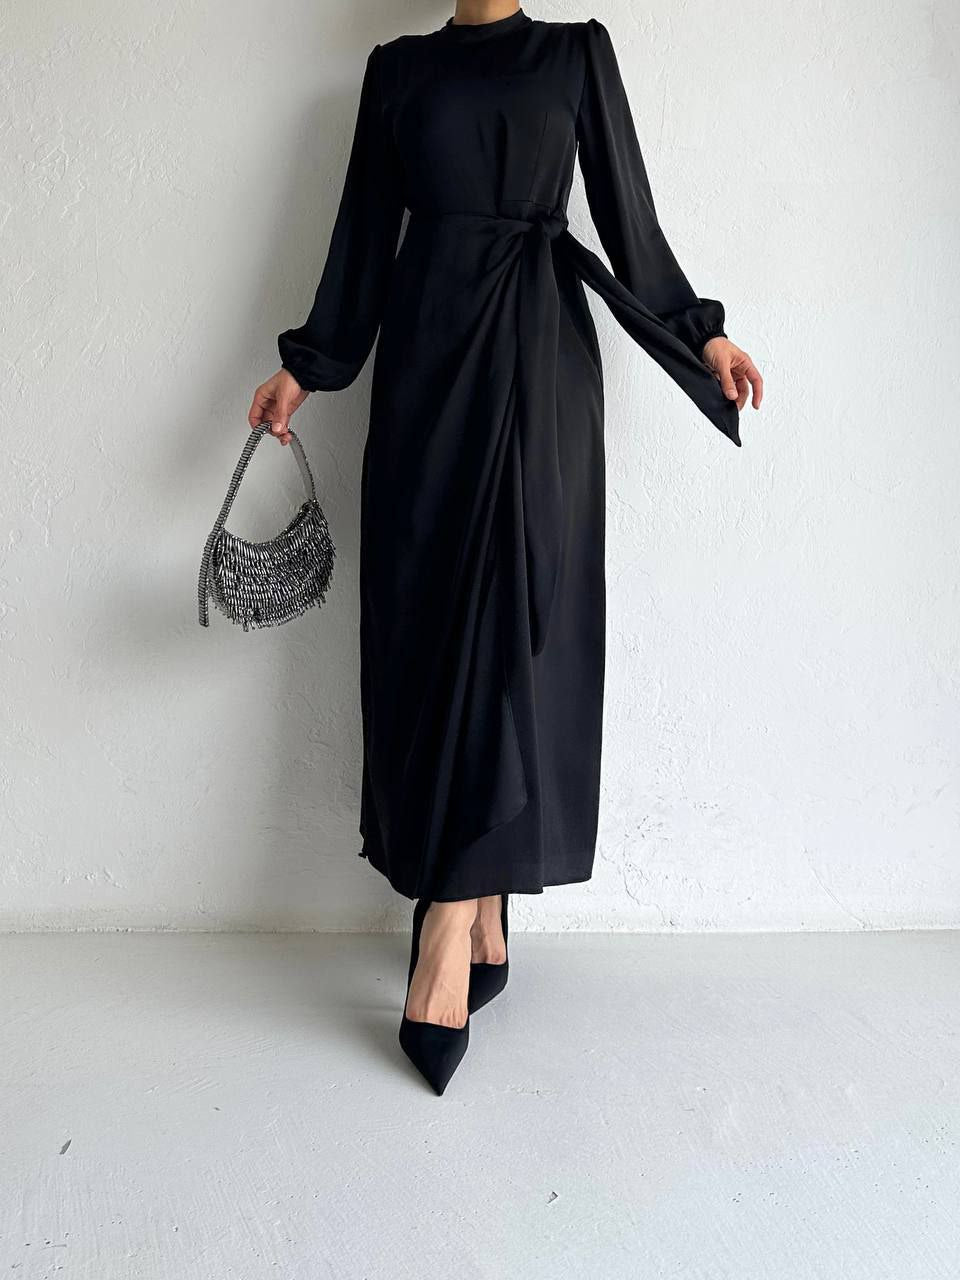 Black Elegant Dress with Side Belt